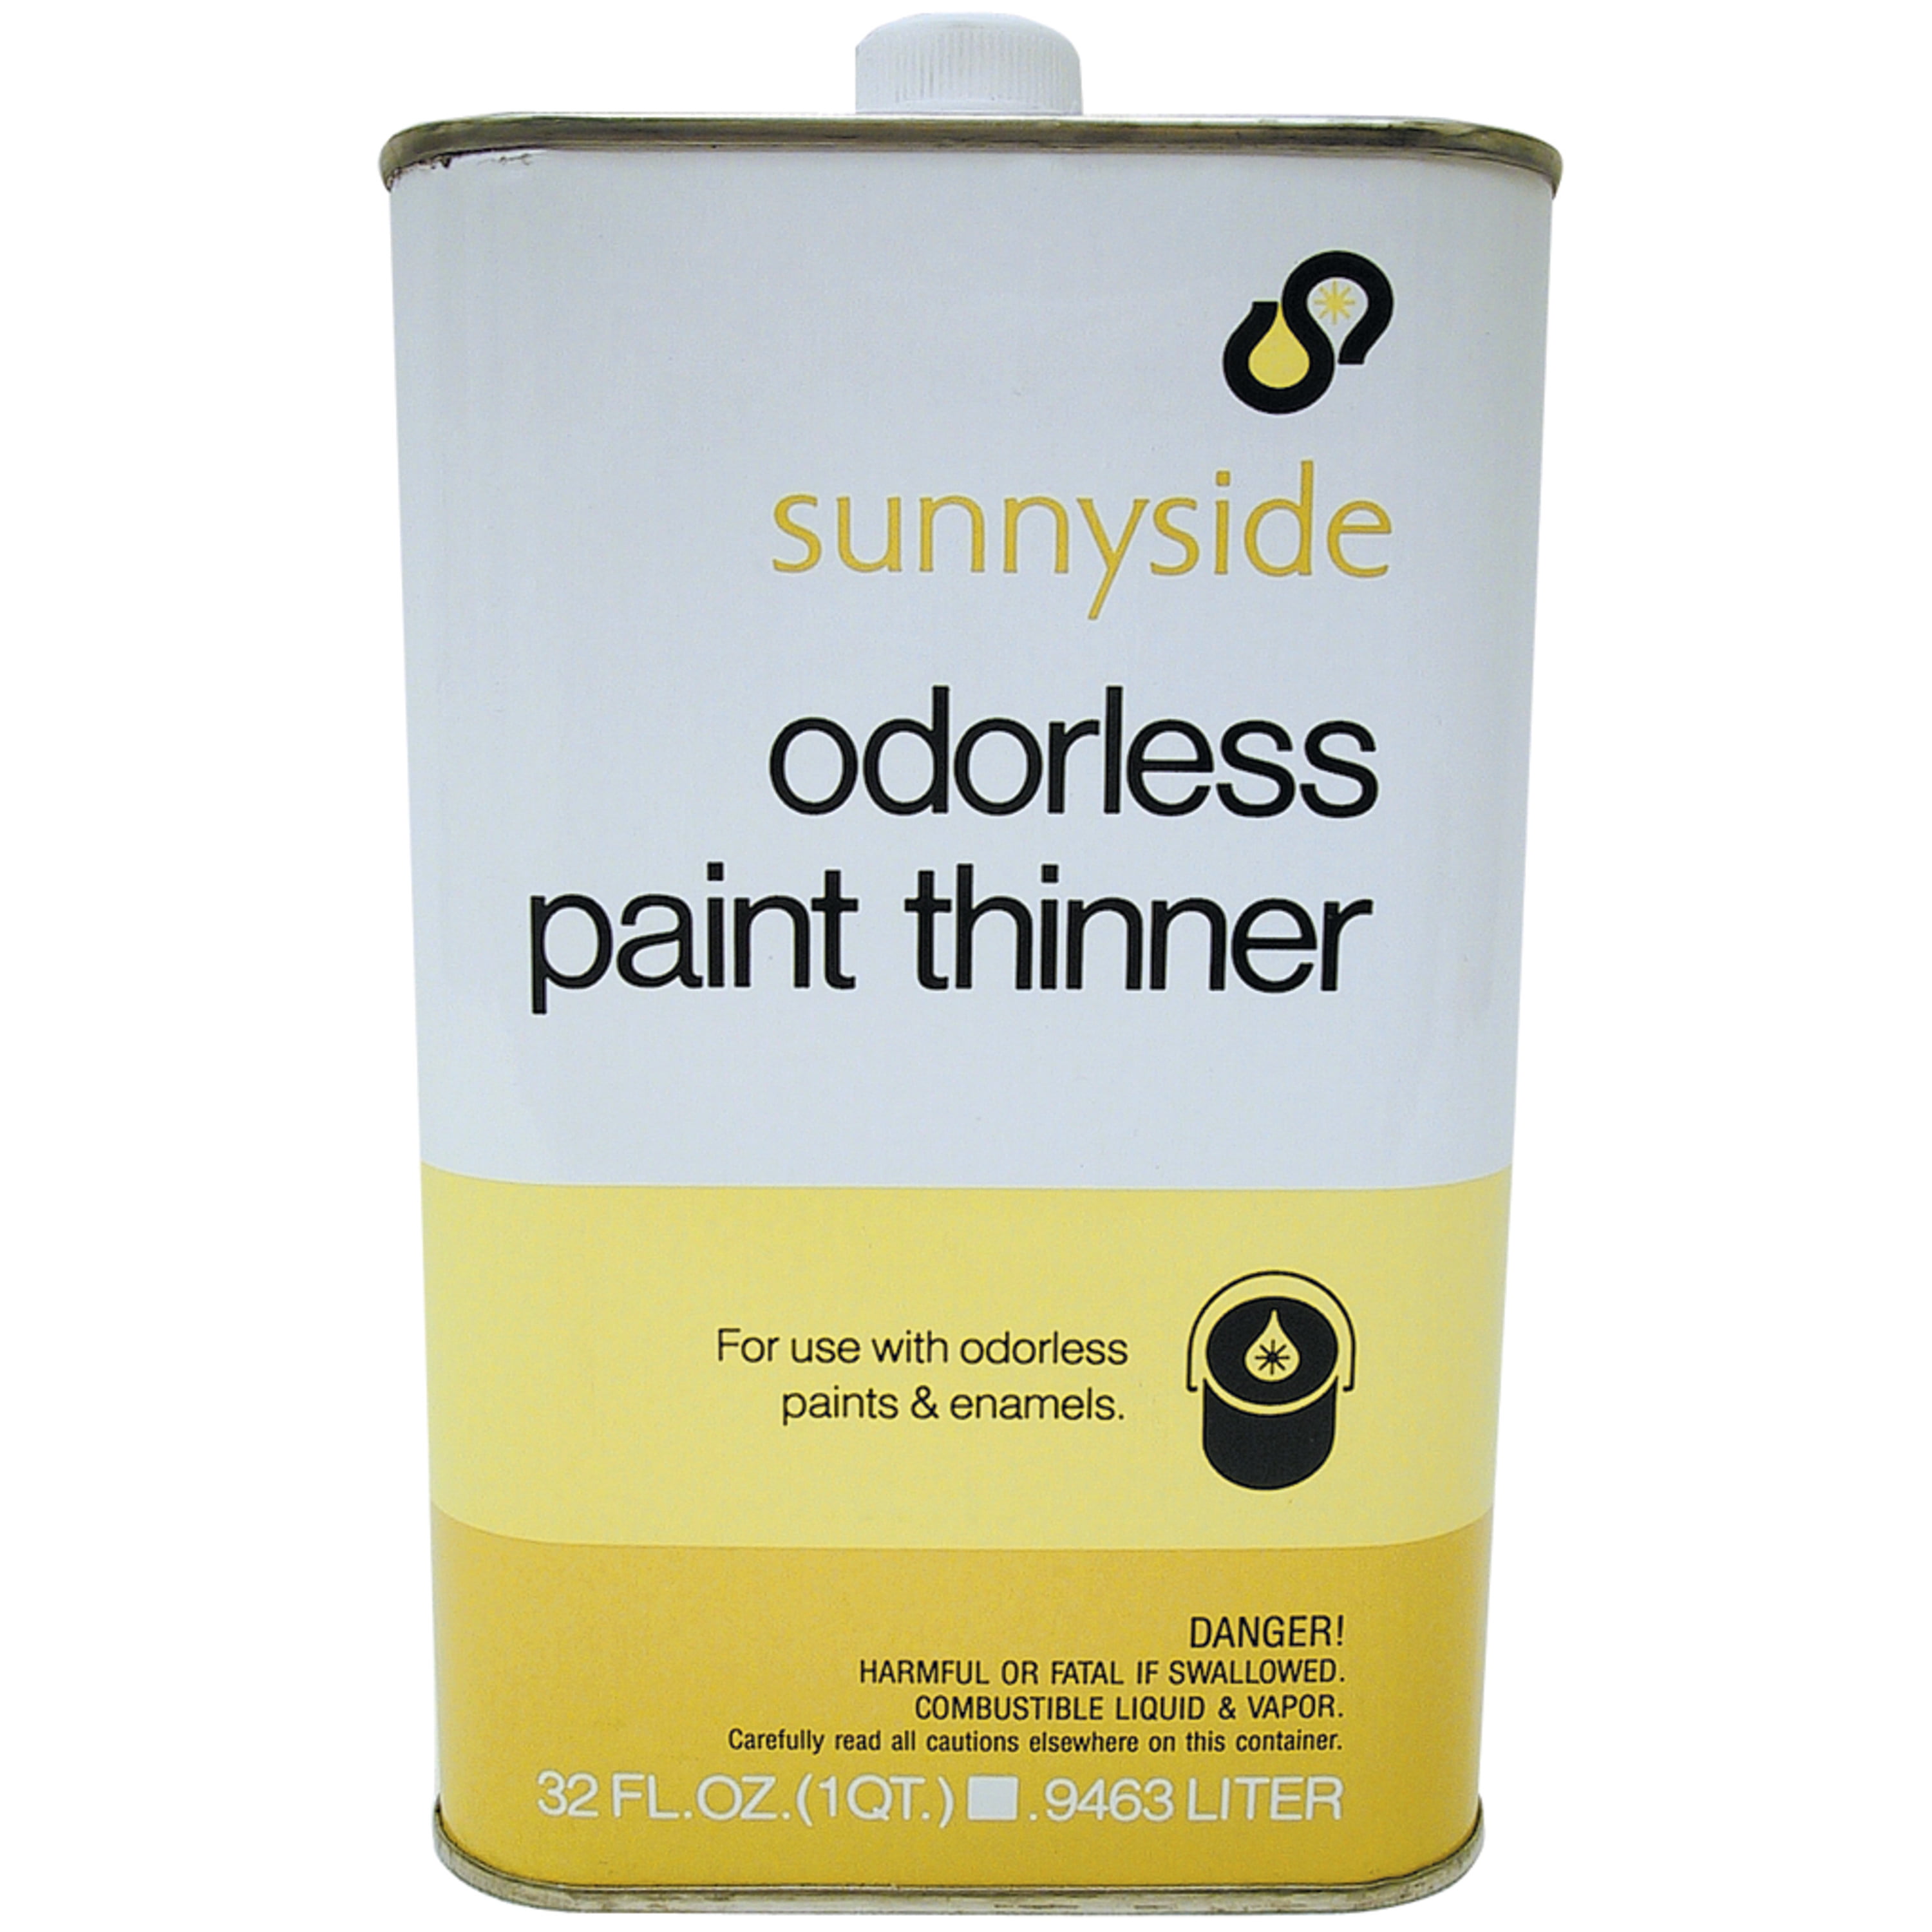 Sunnyside 1 Quart Specs Paint Thinner - Gillman Home Center